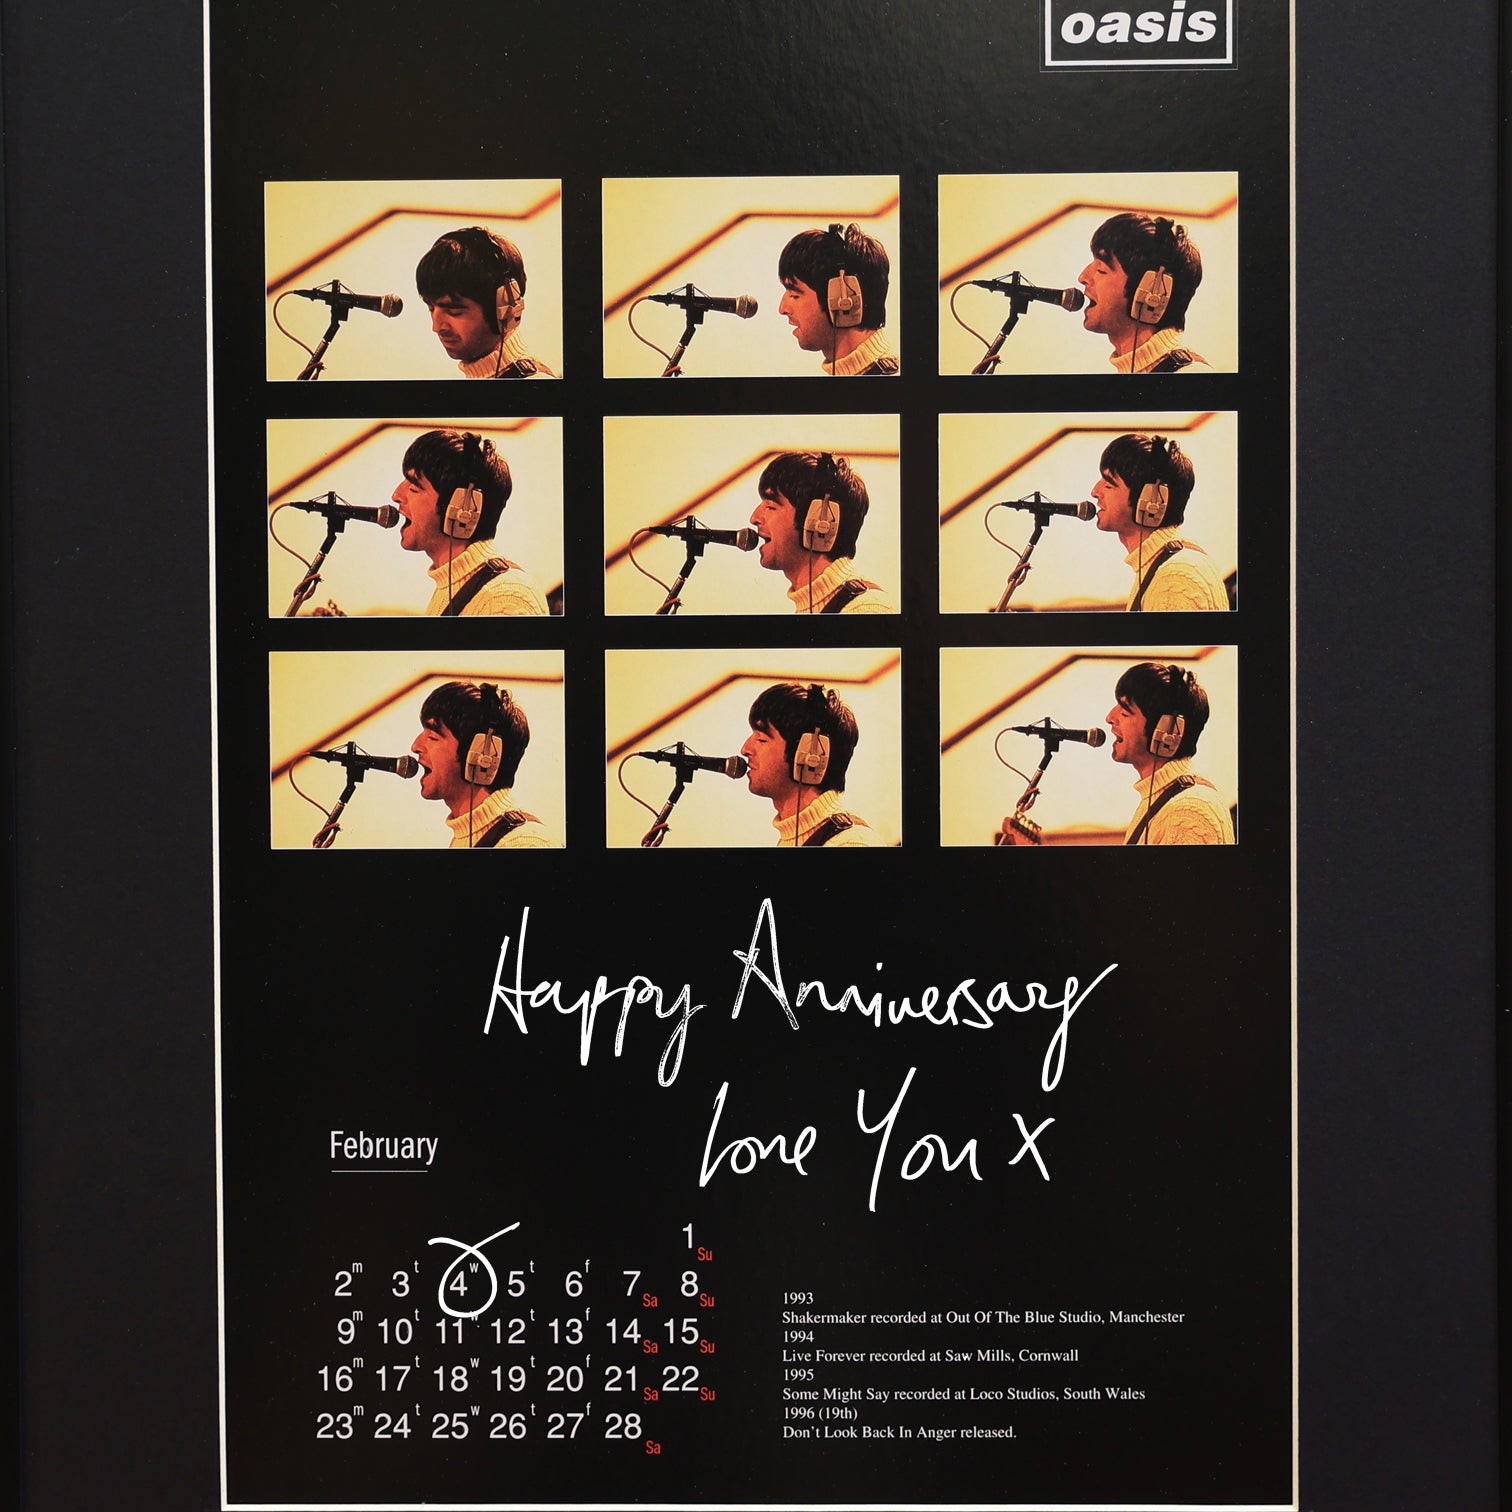 Oasis - April Personalised Calendar.